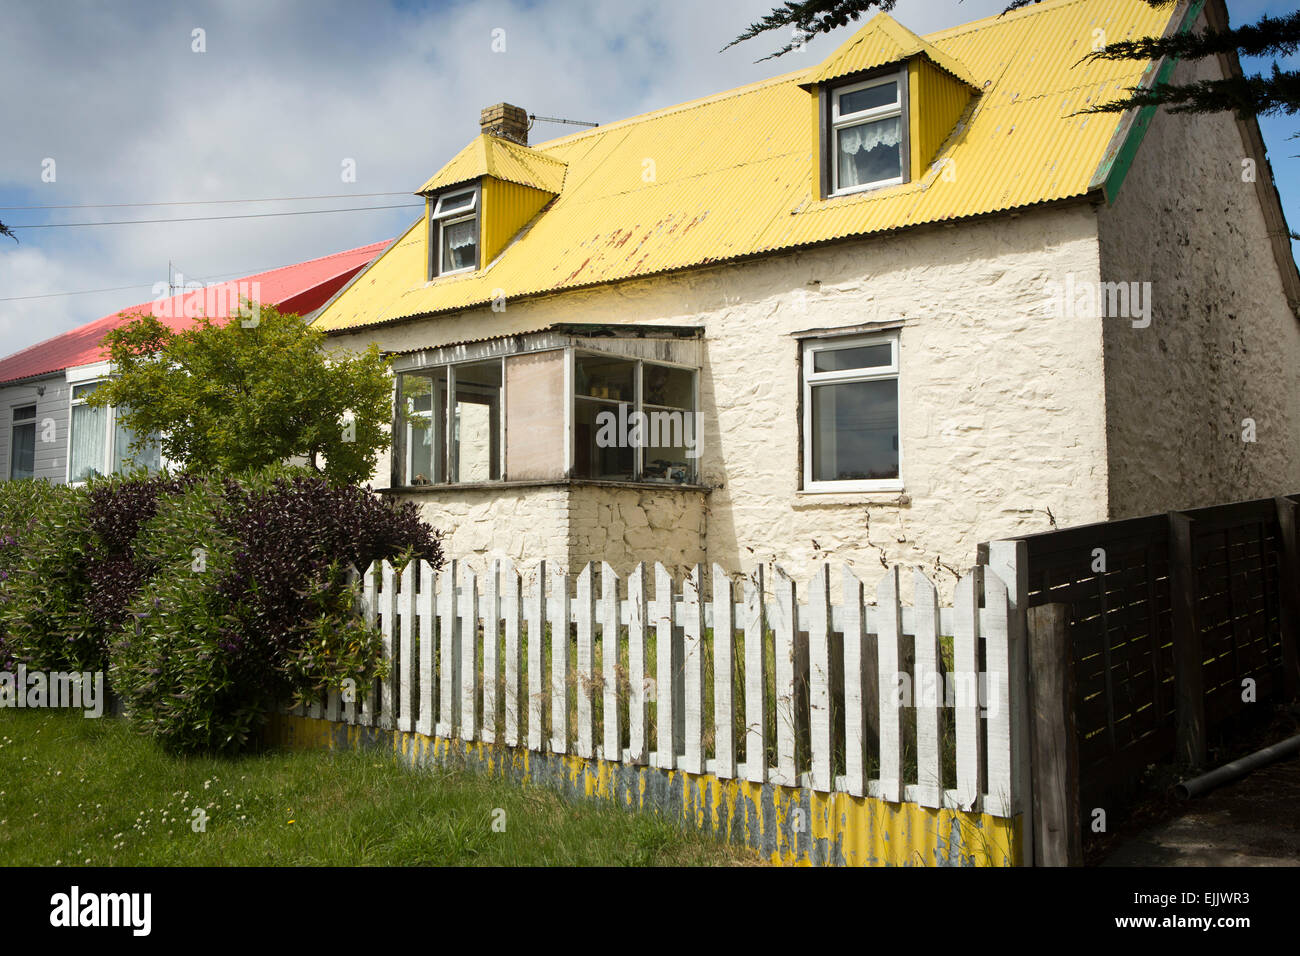 Falkland-Inseln, Port Stanley, Drury Street, traditionelles Haus mit gelb lackierten Blechdach Stockfoto